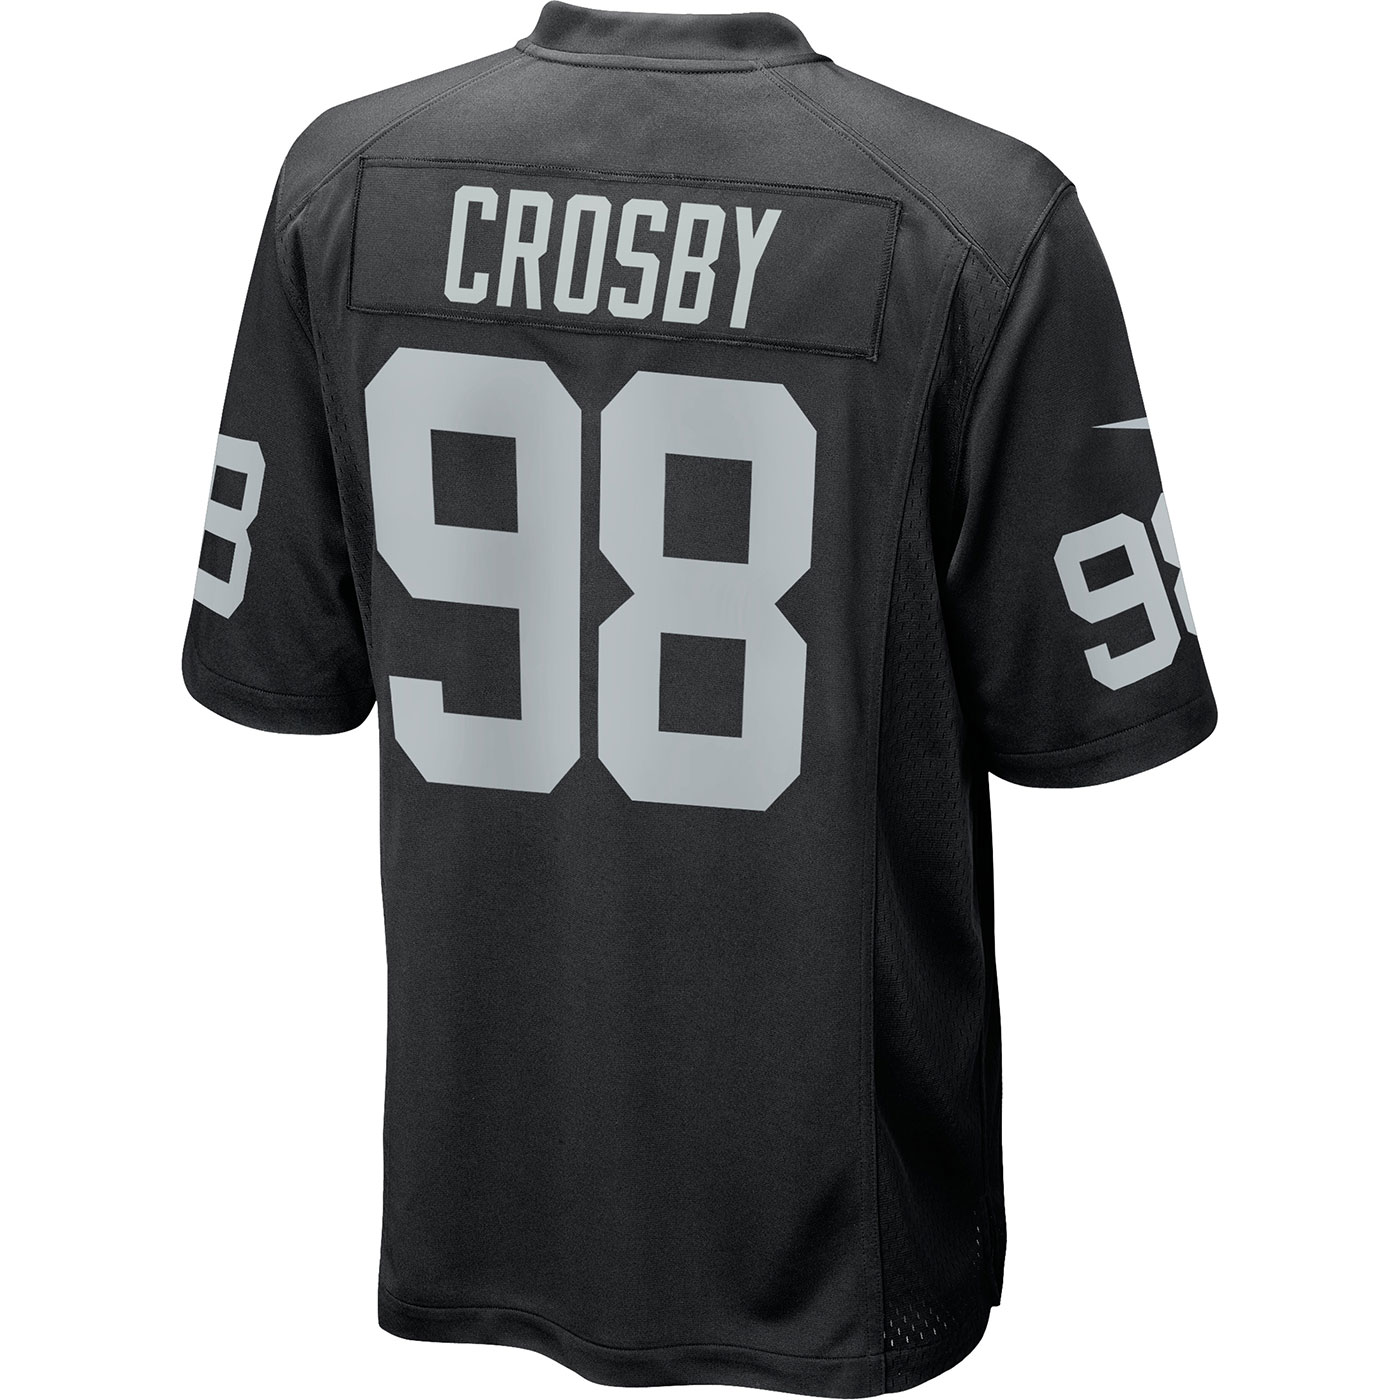 maxx crosby jersey